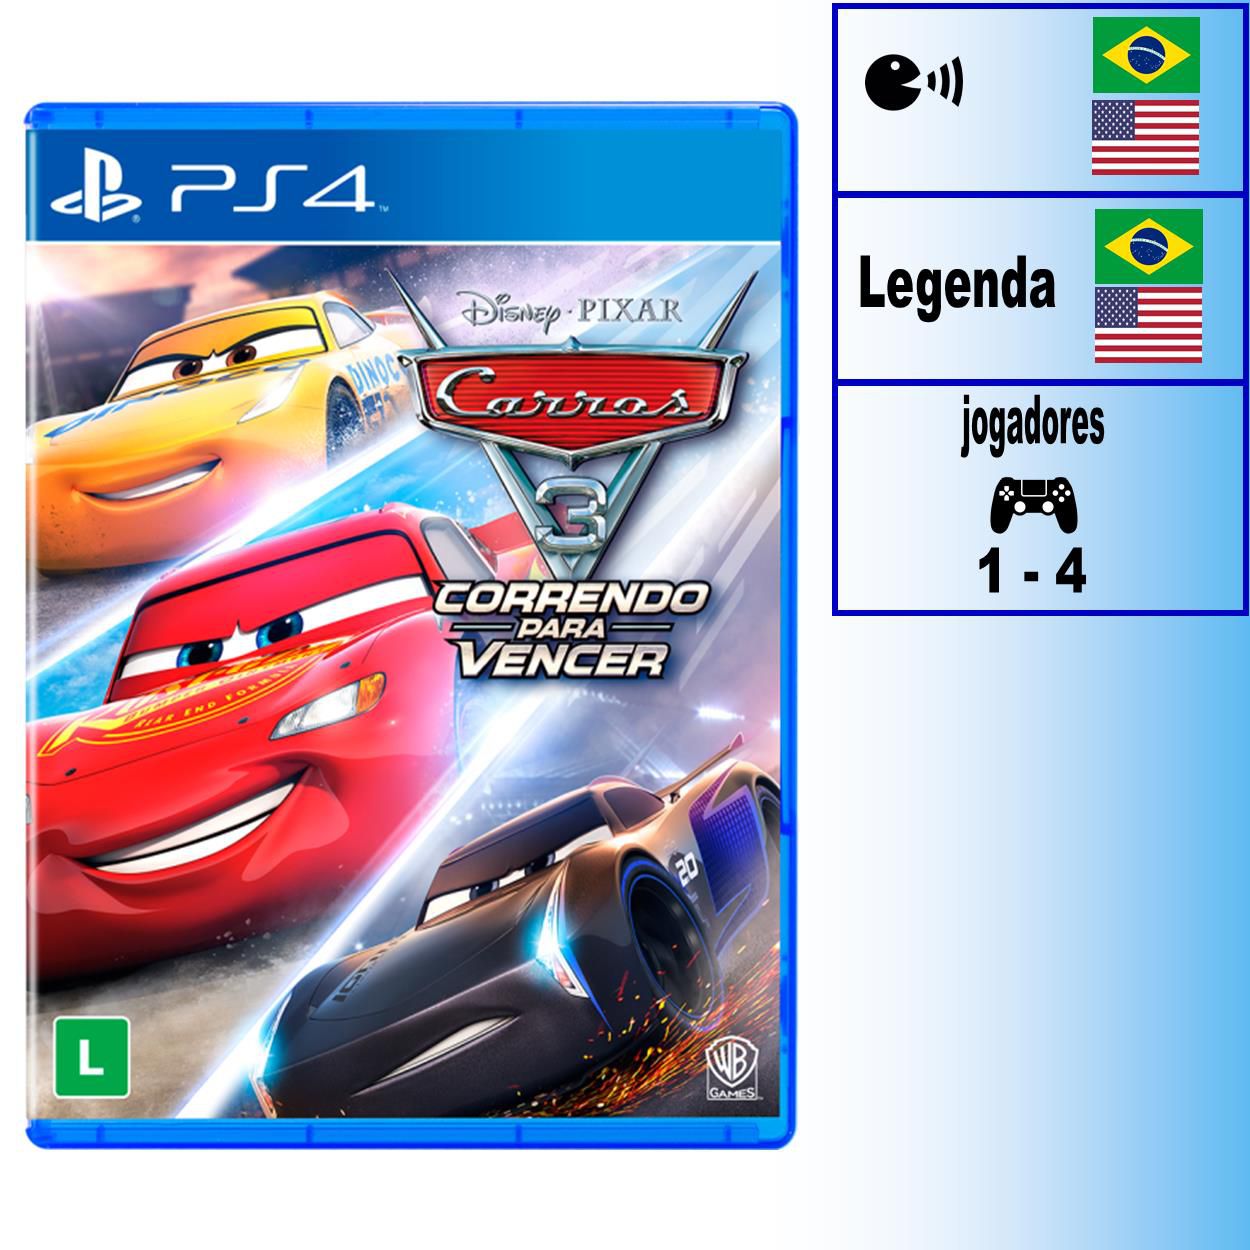 DISNEY PIXAR CARROS 2 - O JOGO DE XBOX 360, PS3, Wii E PC (PT-BR